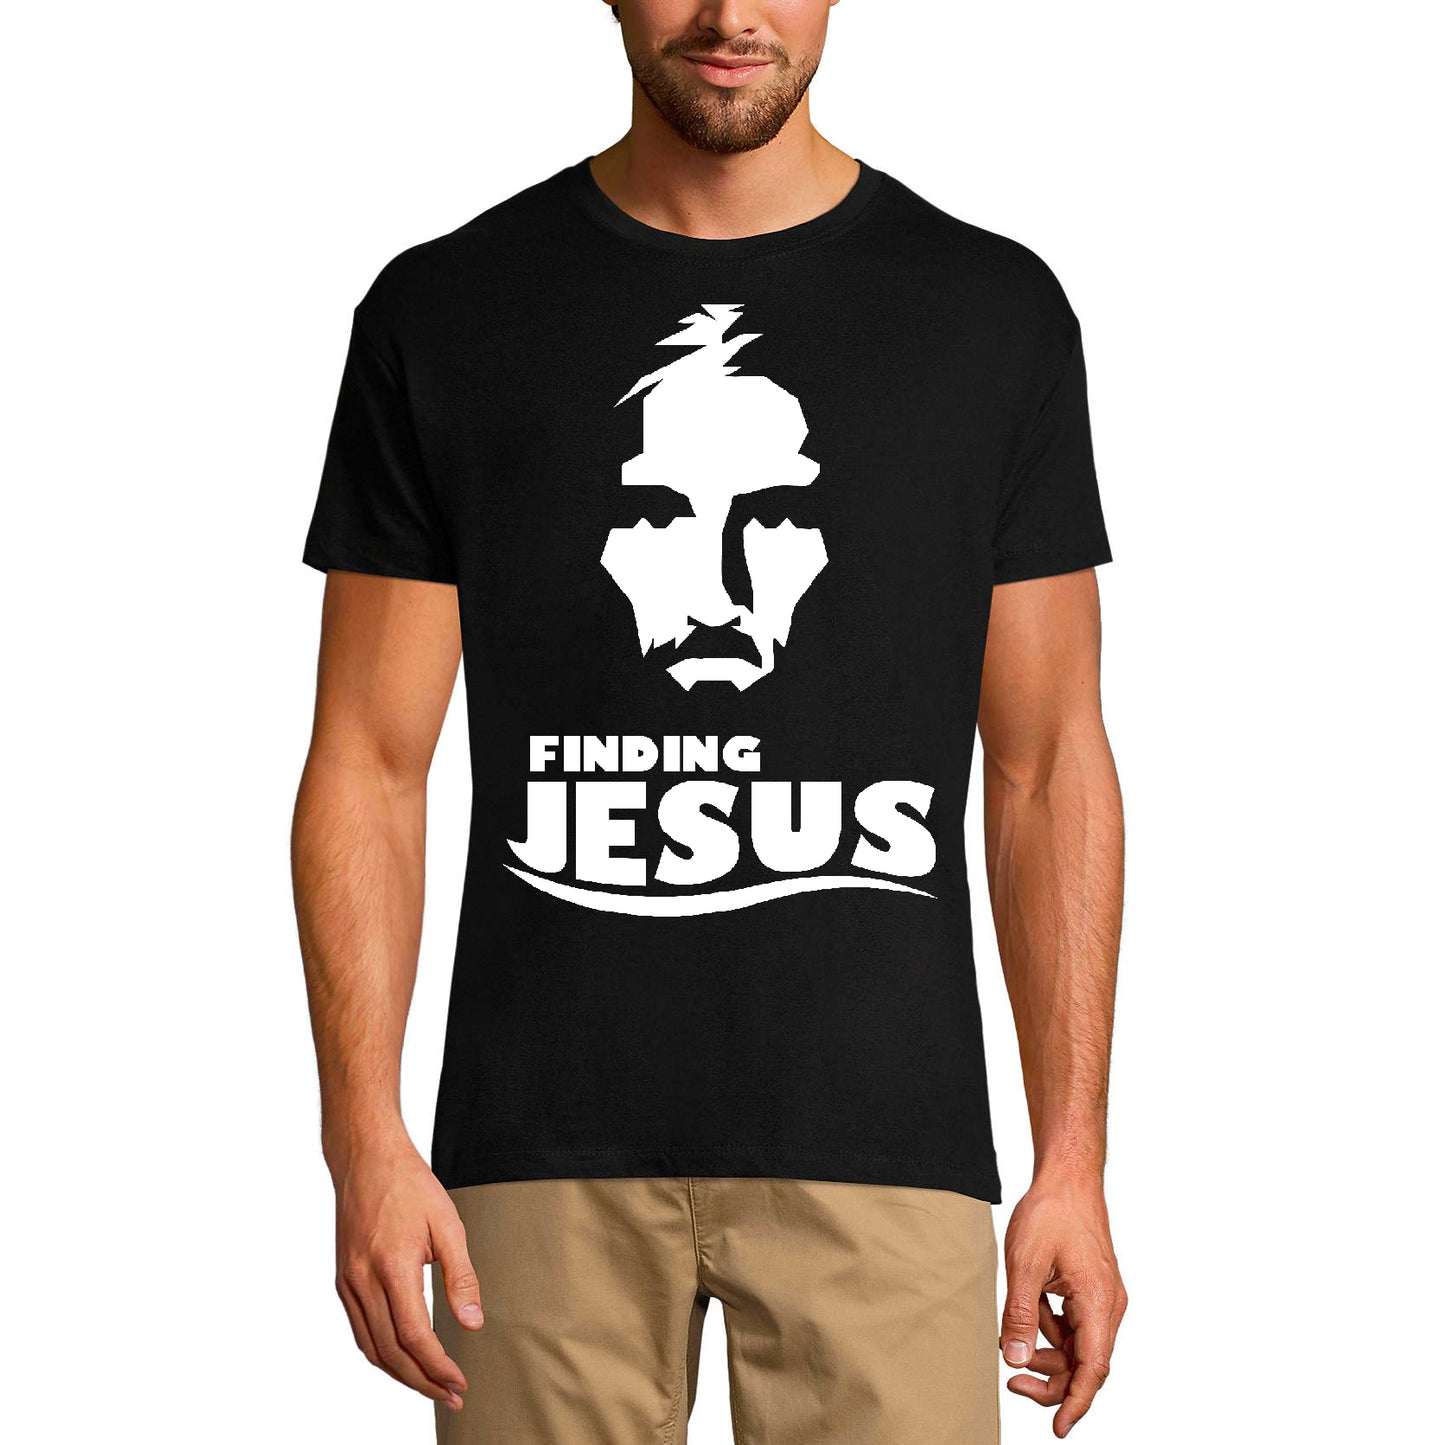 T-shirt religieux ULTRABASIC pour hommes Trouver Jésus - Chemise de foi Bible Christ